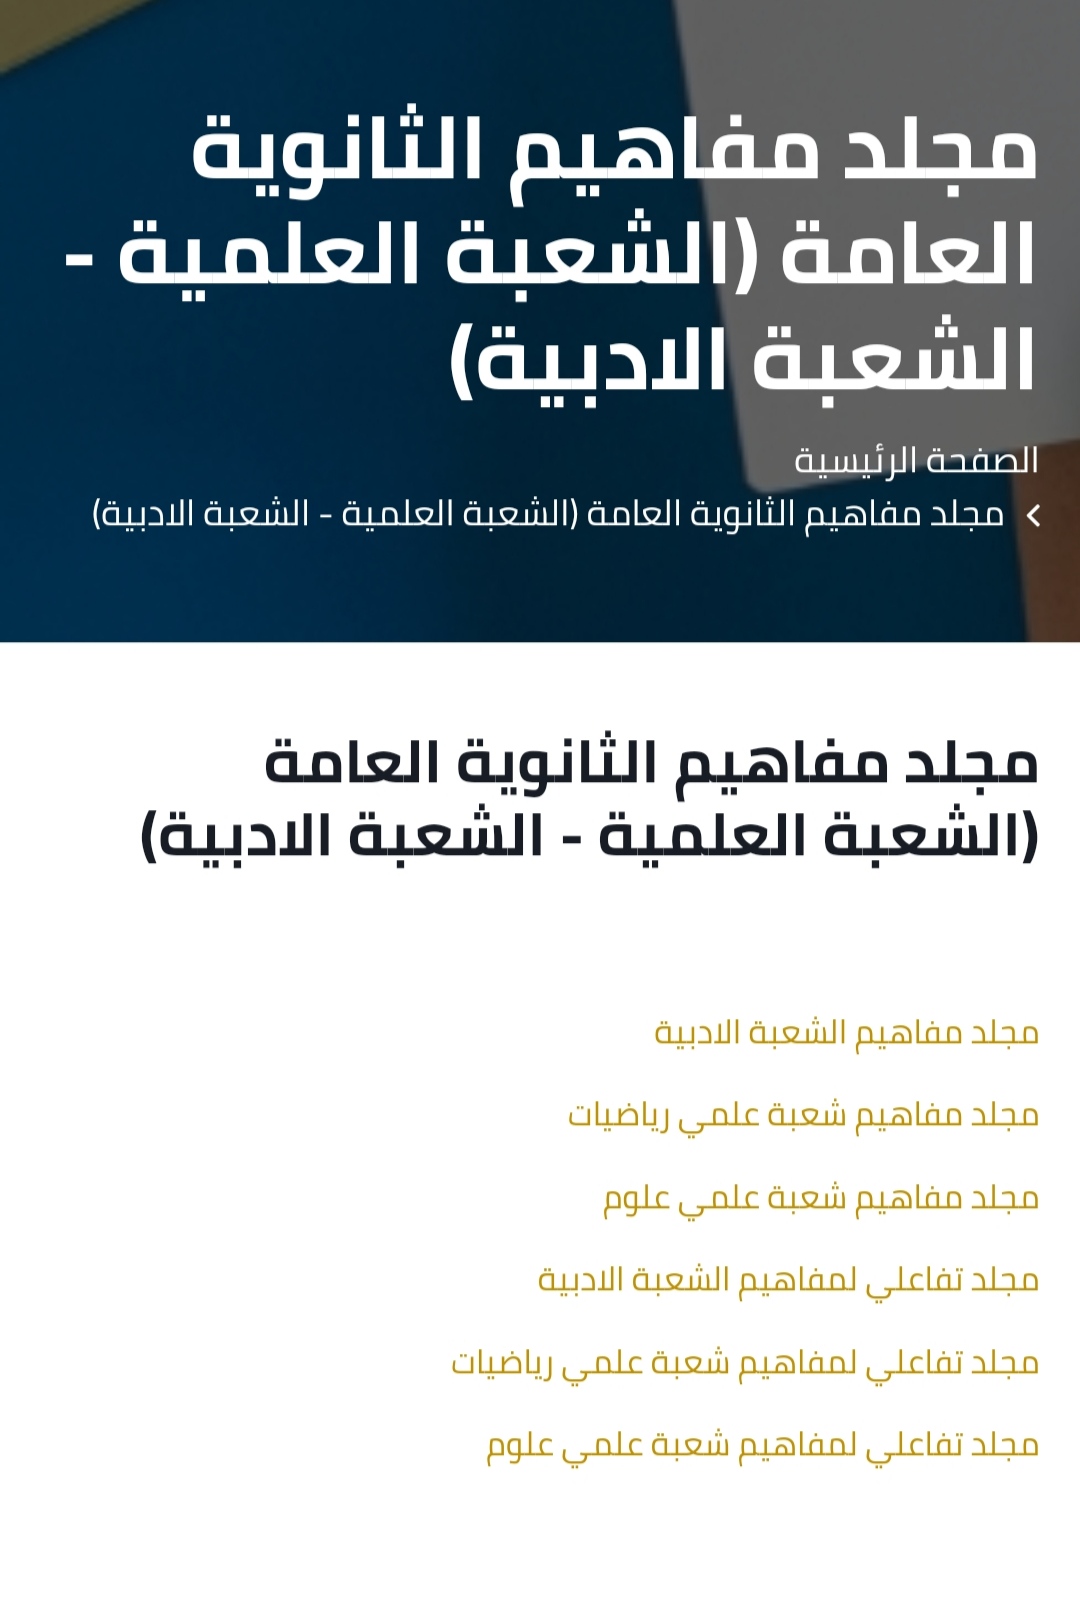 جورنال مصر ينشر رابط "مجلدات المفاهيم" للثانوية العامة 2022